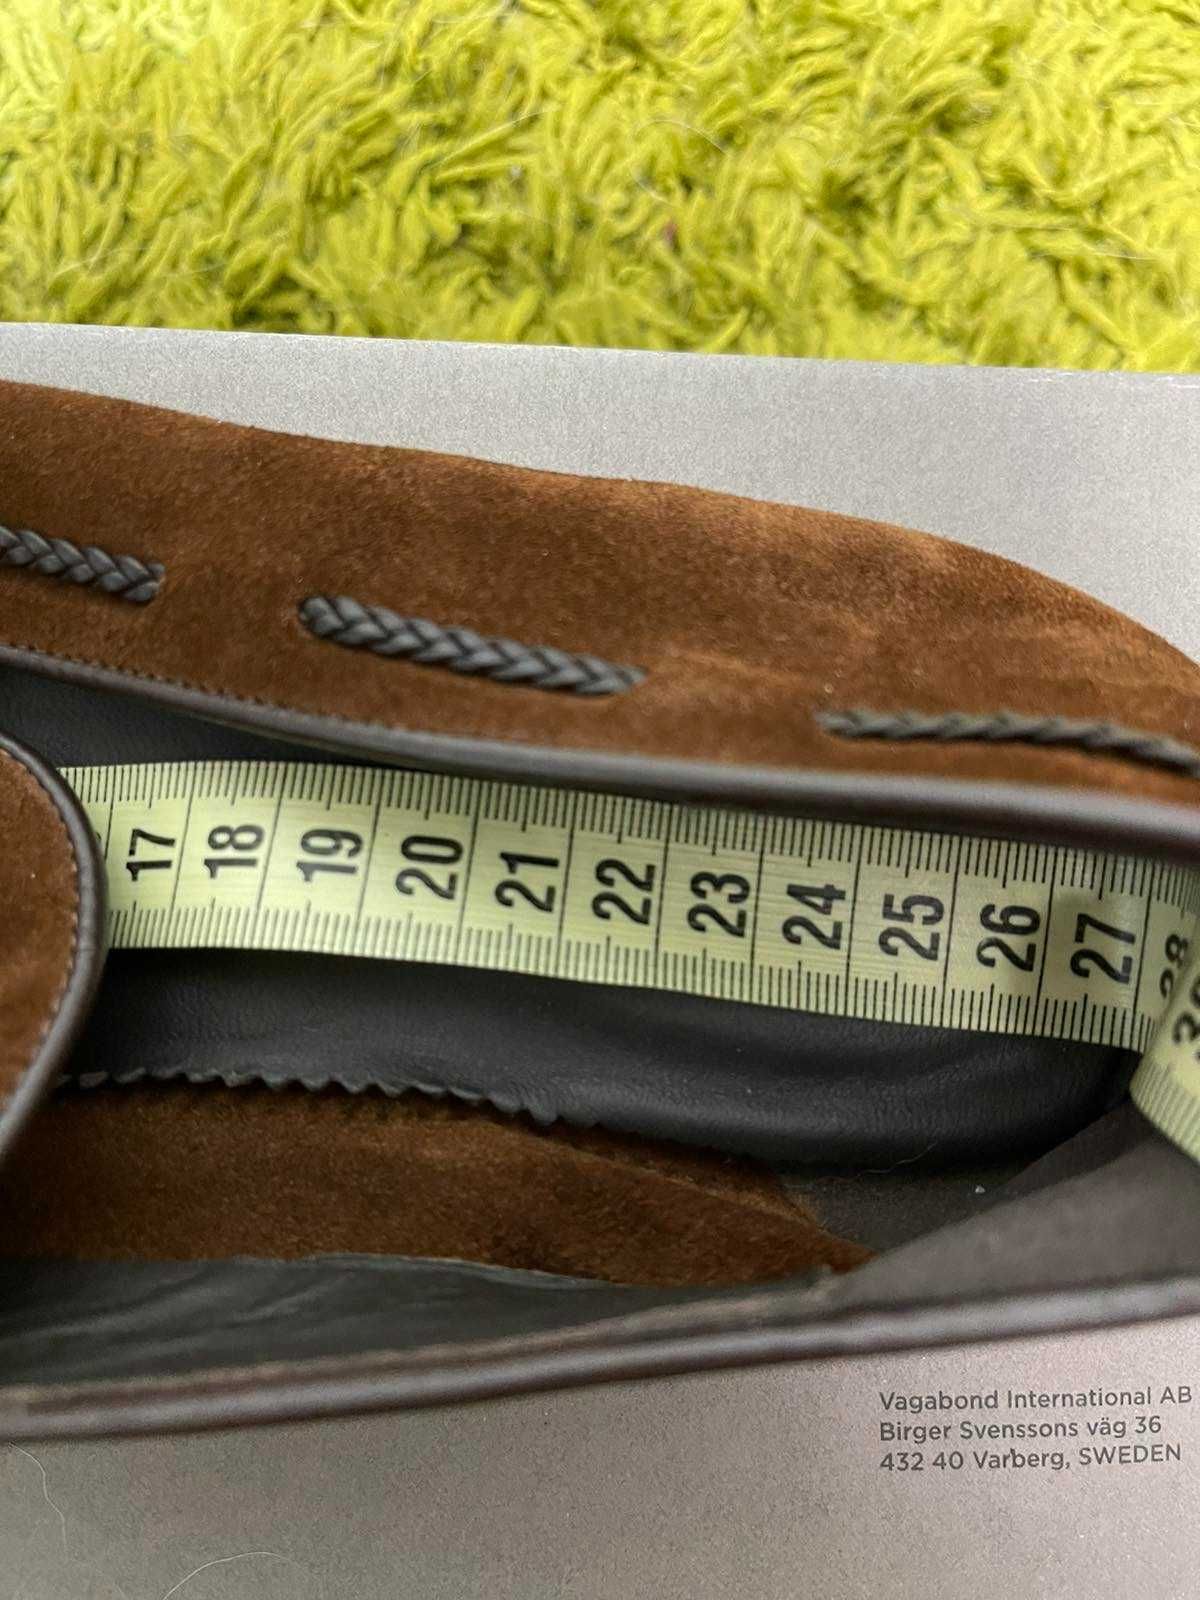 Мужские туфли (мокасины, лоферы) Zara р. 41, длина стельки 27 см.